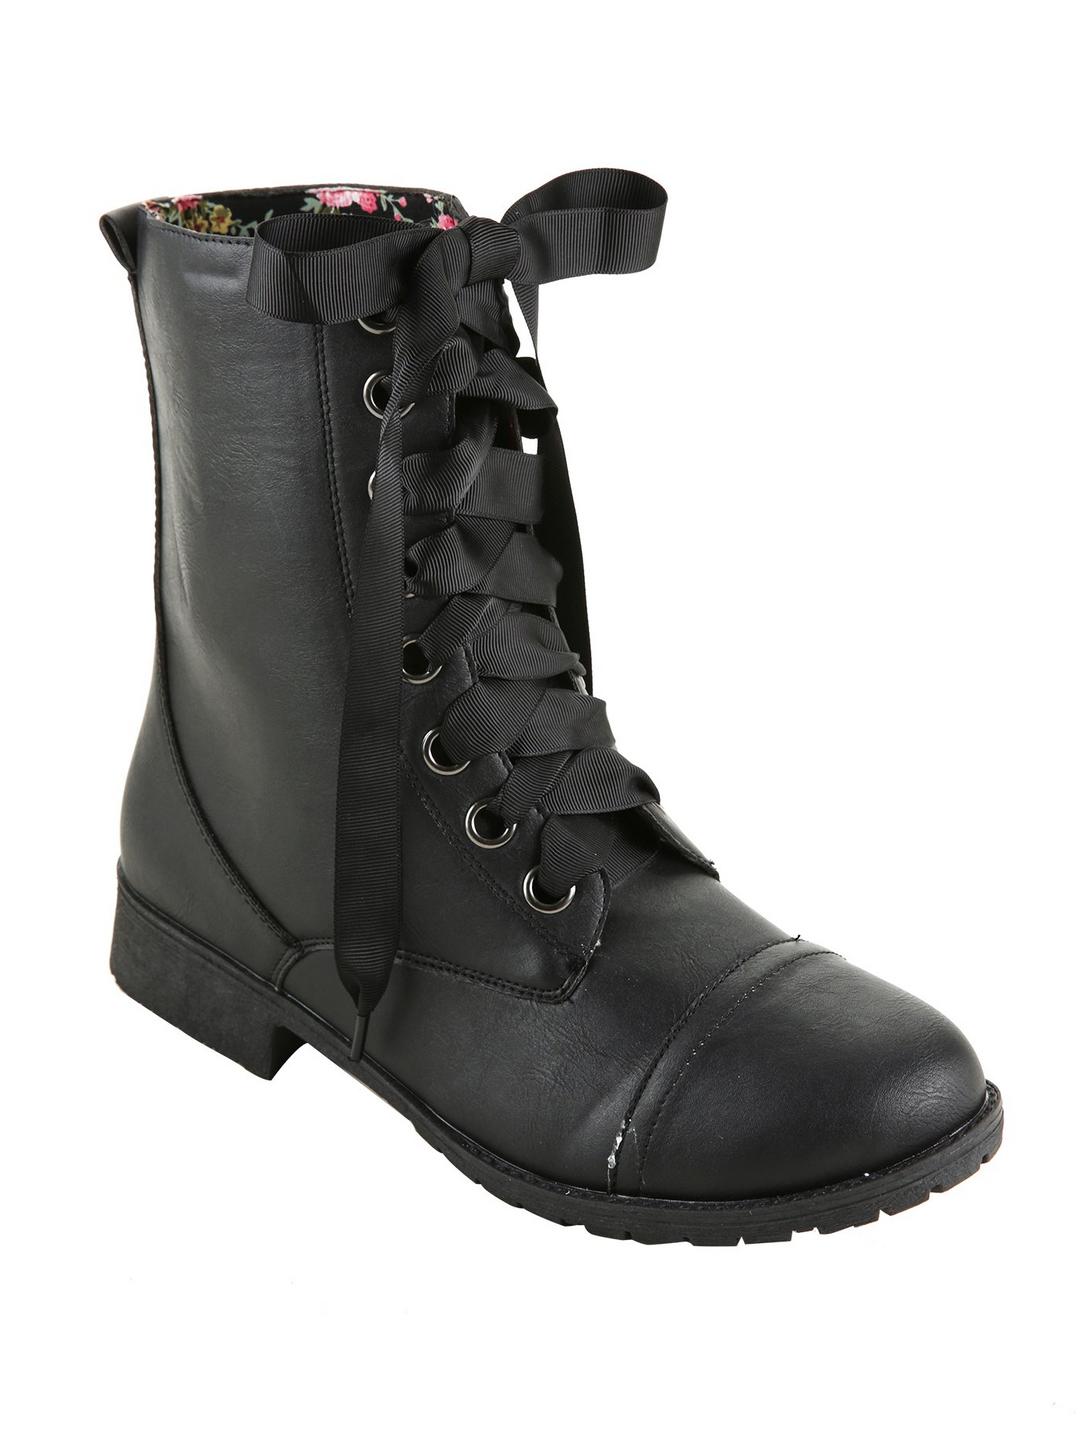 Black Floral Lined Wide Width Combat Boots, BLACK, hi-res